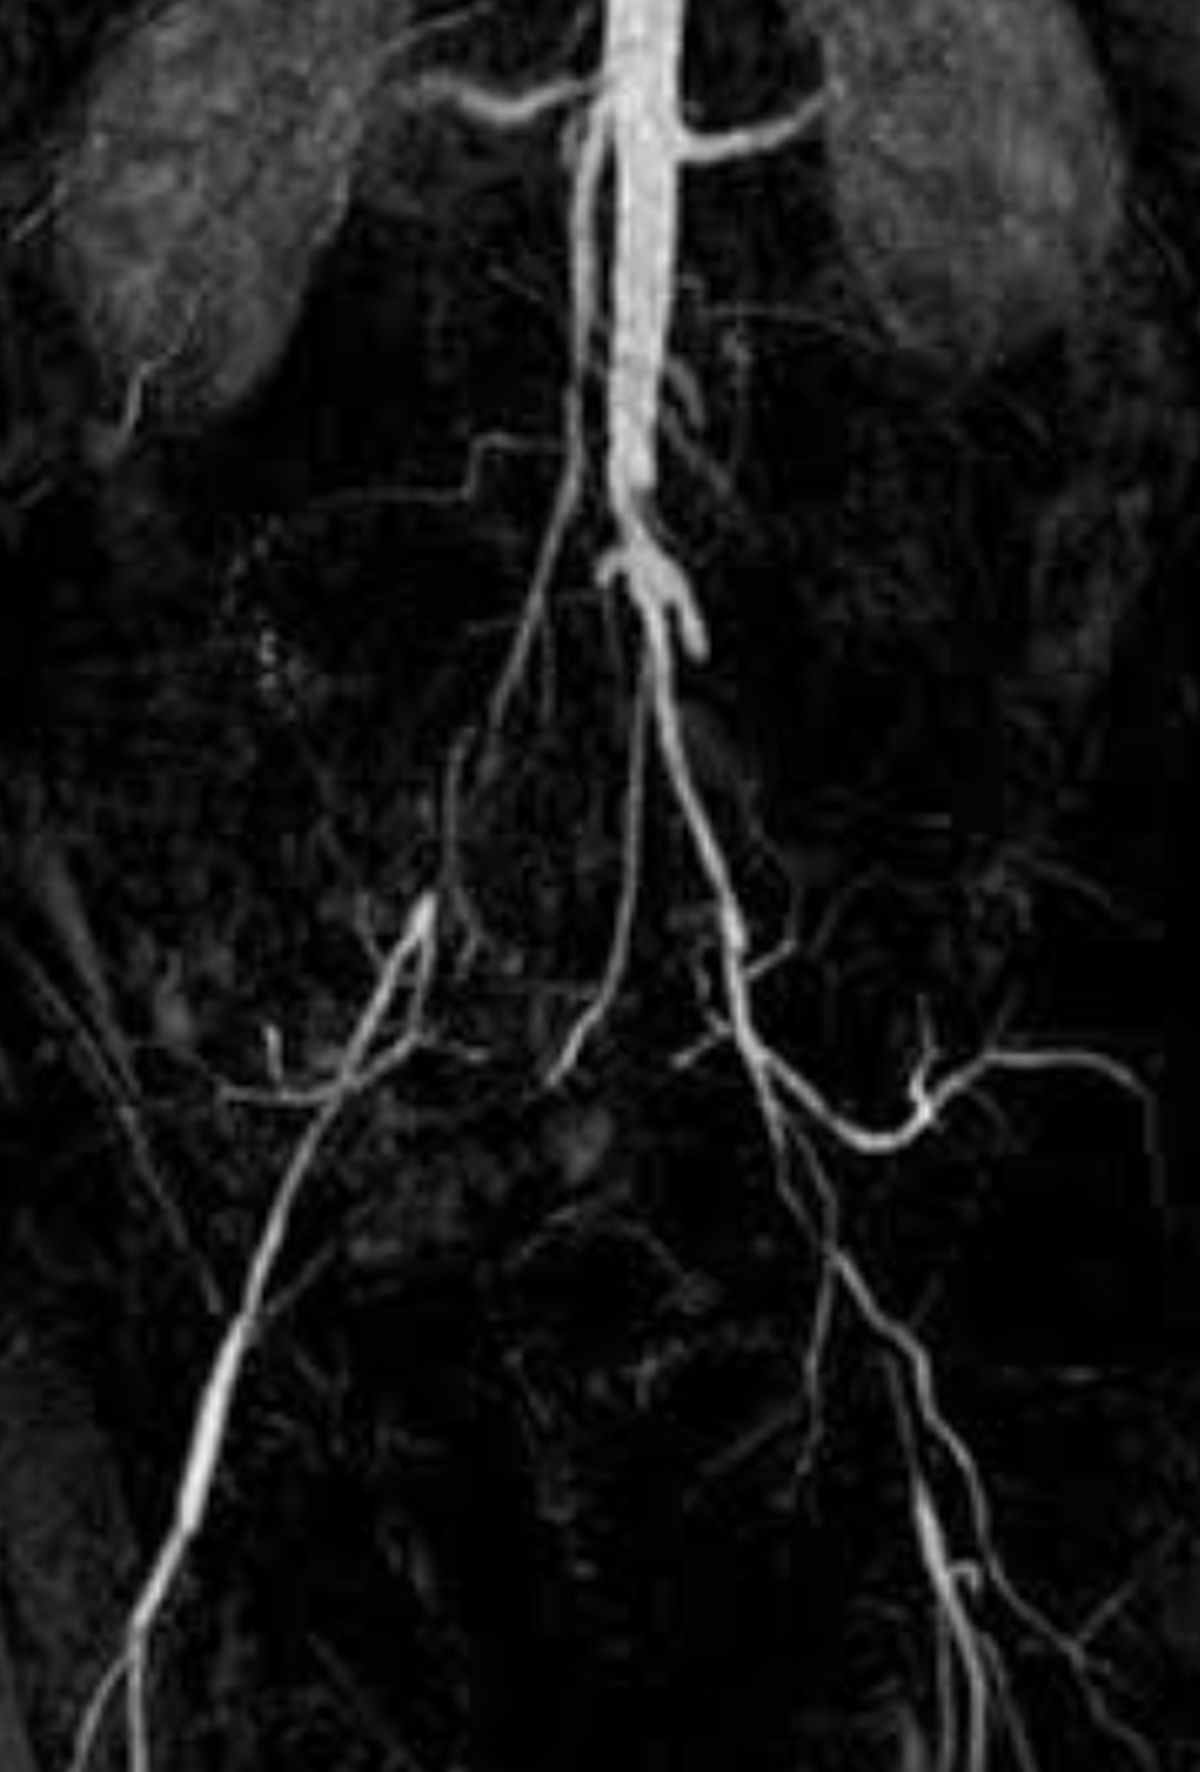 MR angio in aortic bifurcation disease